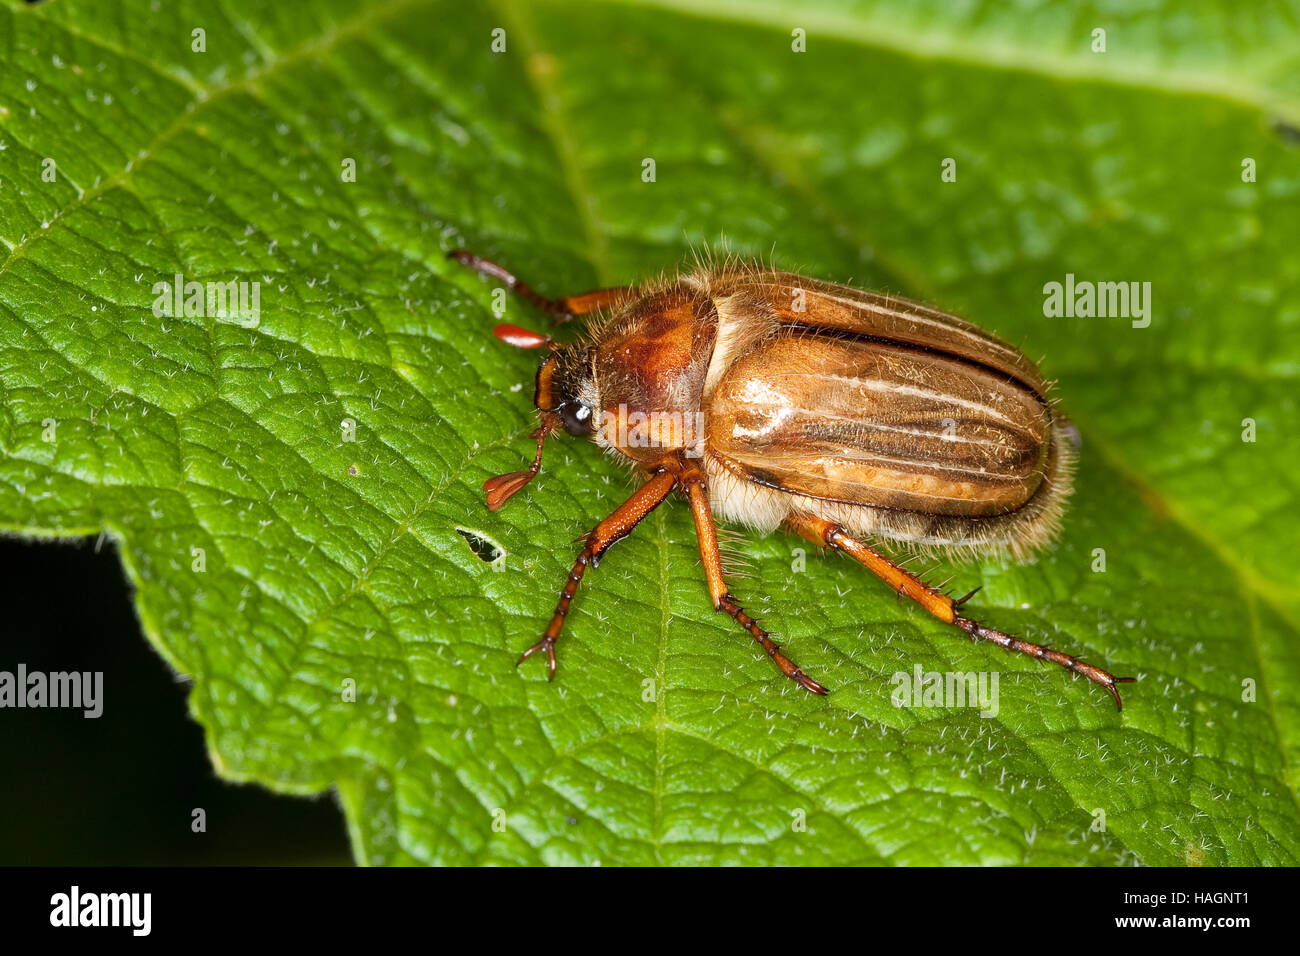 Junikäfer, Gerippter Brachkäfer, Sonnenwendkäfer, Amphimallon solstitiale, summer chafer, European june beetle Stock Photo